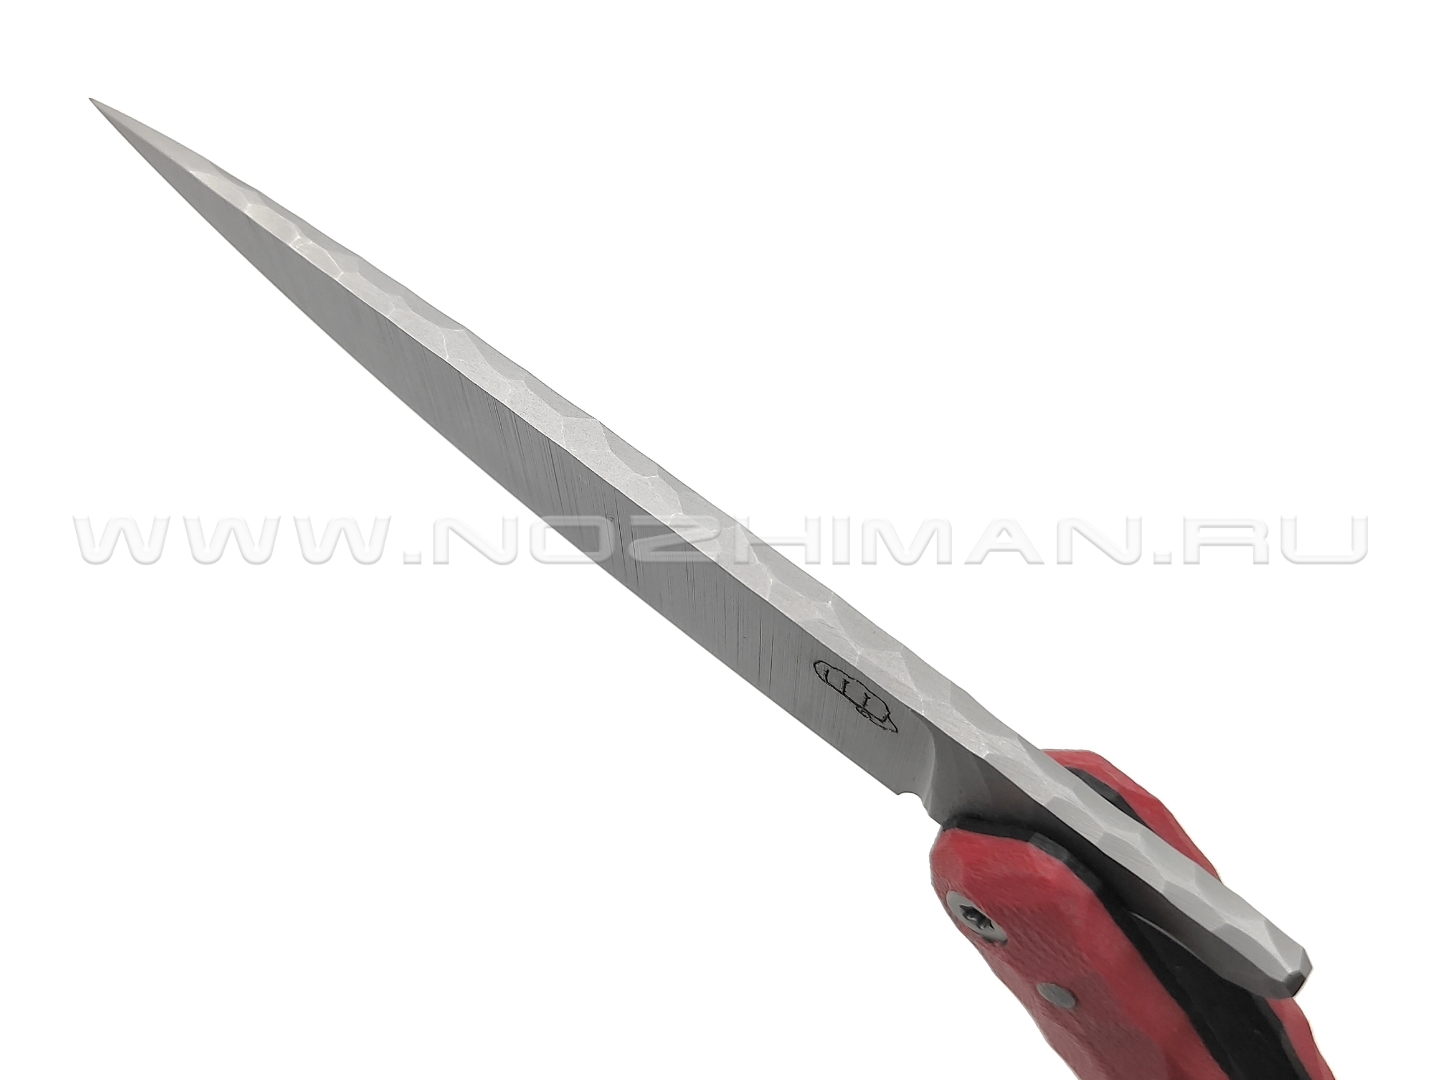 Андрей Кулаков большой фрикционный нож KUL061 сталь 95Х18, рукоять G10 red & black